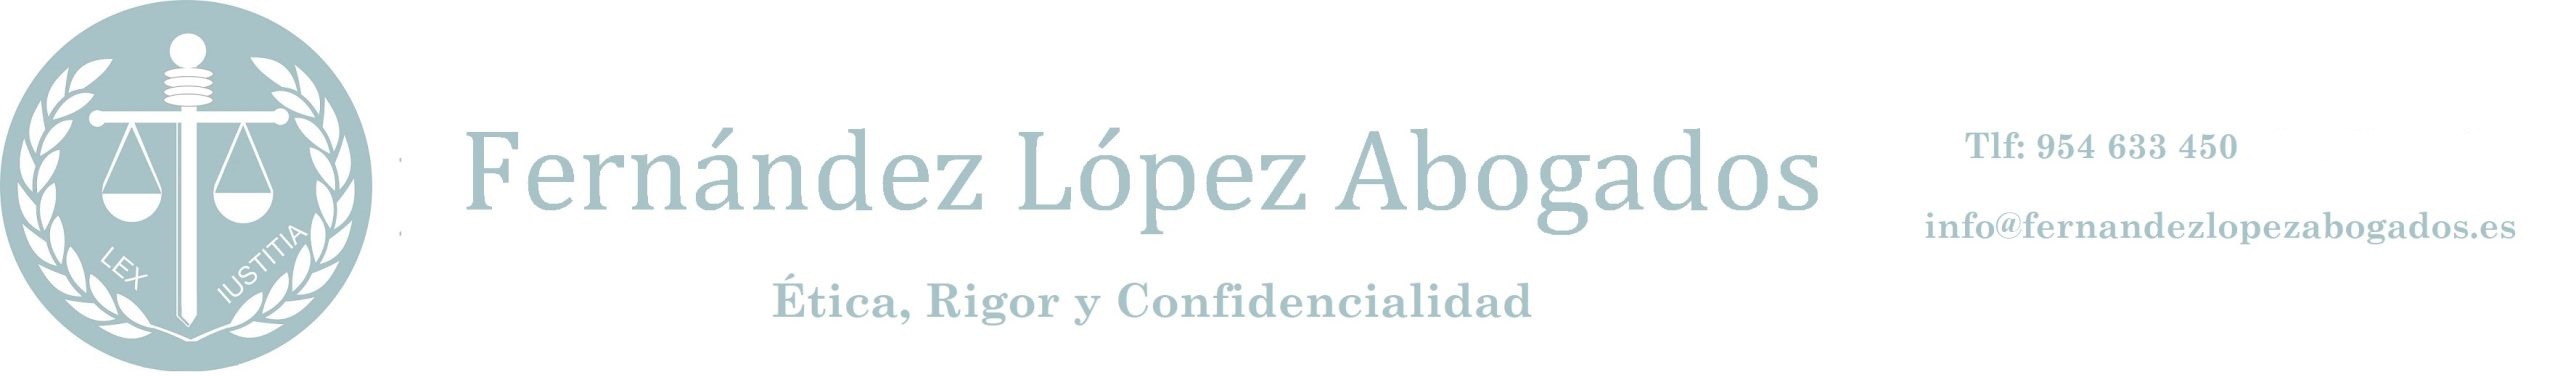 Fernández López Abogados logo